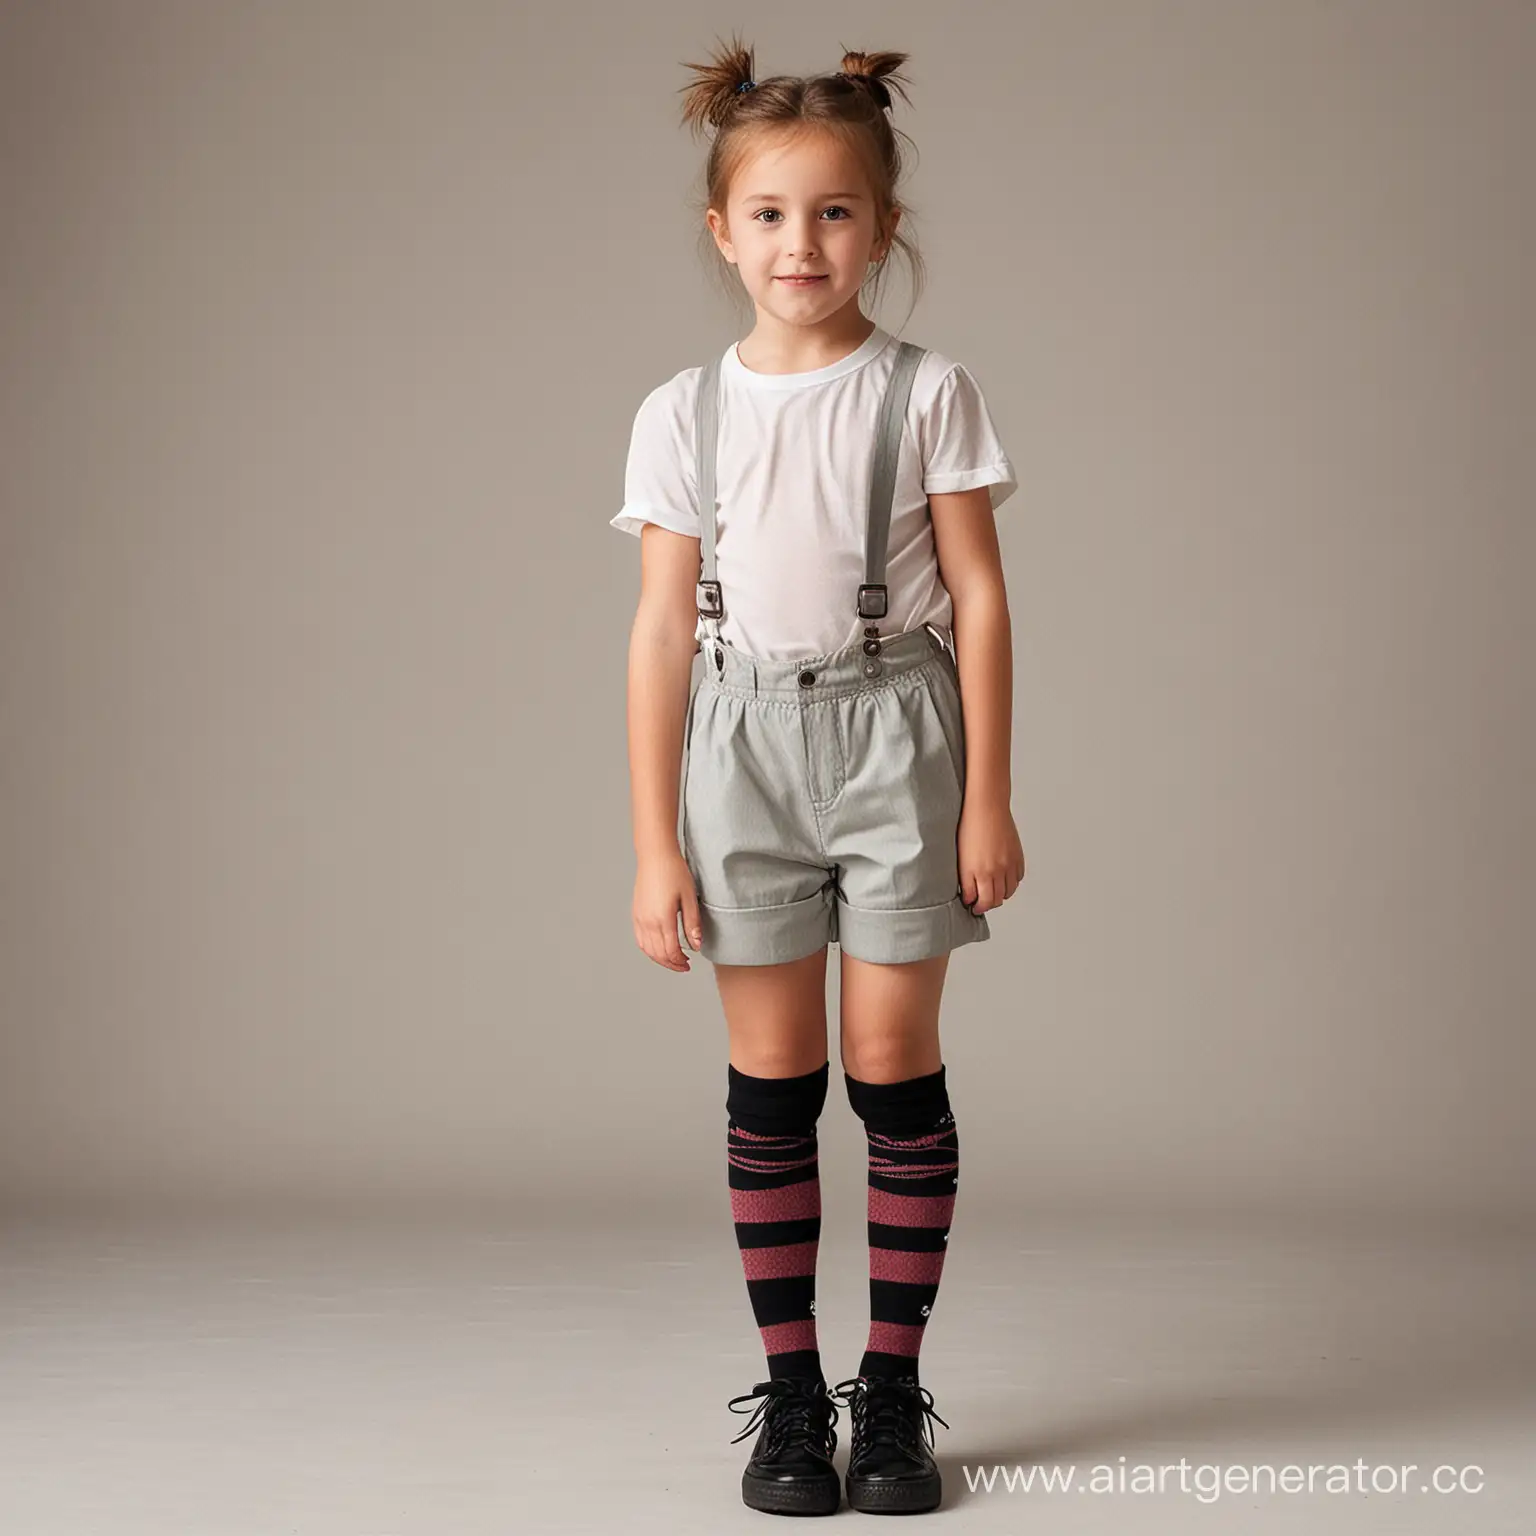 Little girl in long shorts and knee socks